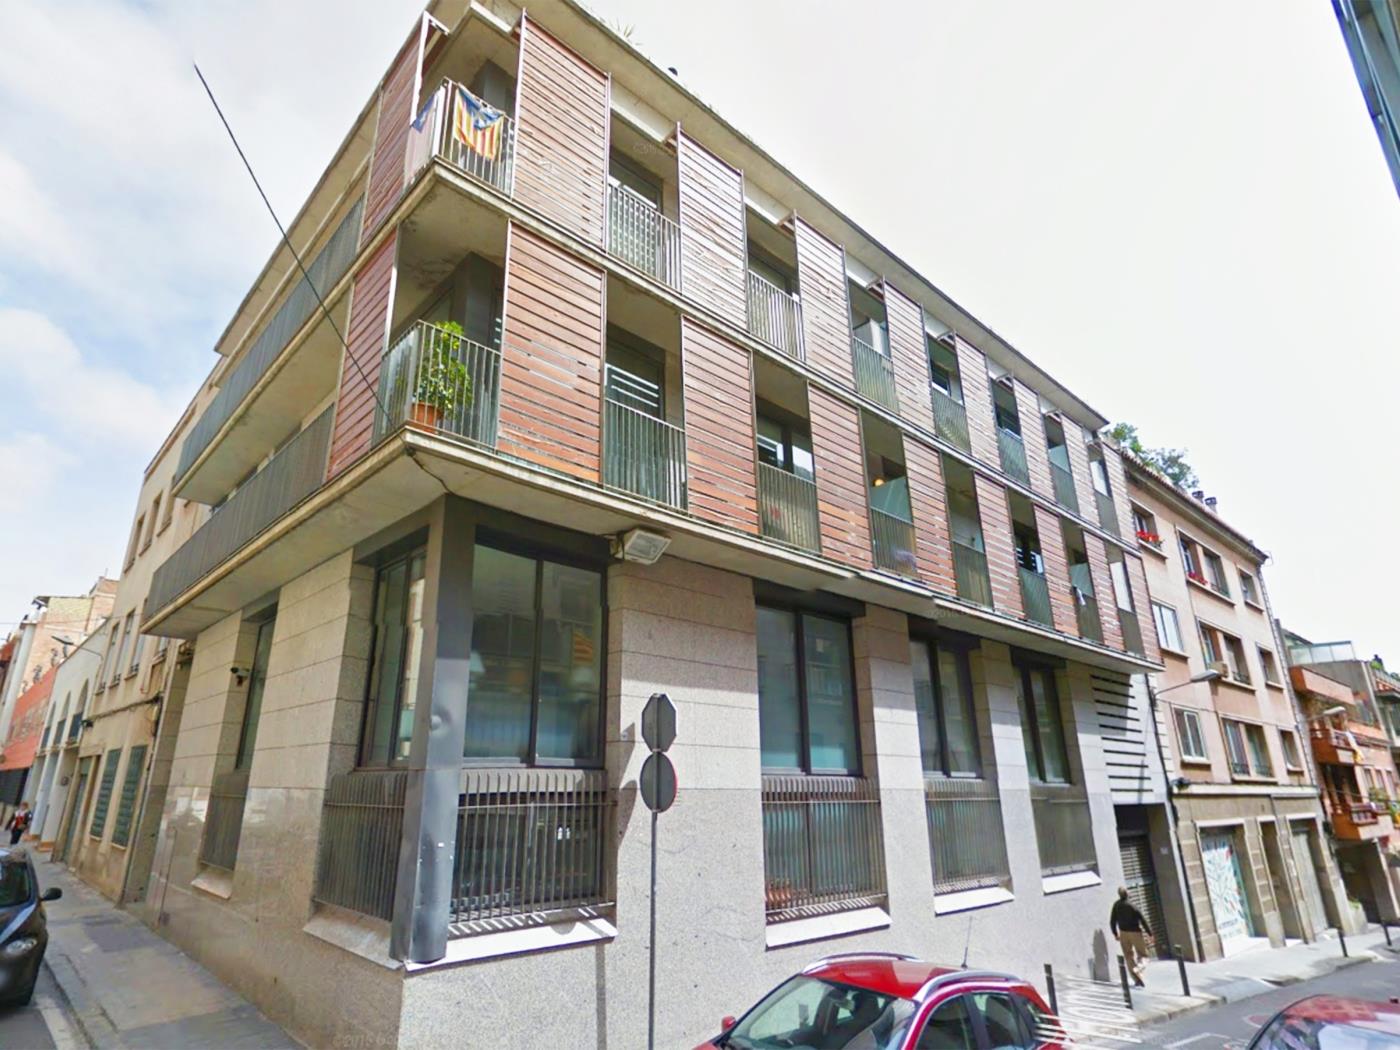 Grupo de 3 apartamentos para hasta 18 personas con terrazas privadas - My Space Barcelona Apartamentos